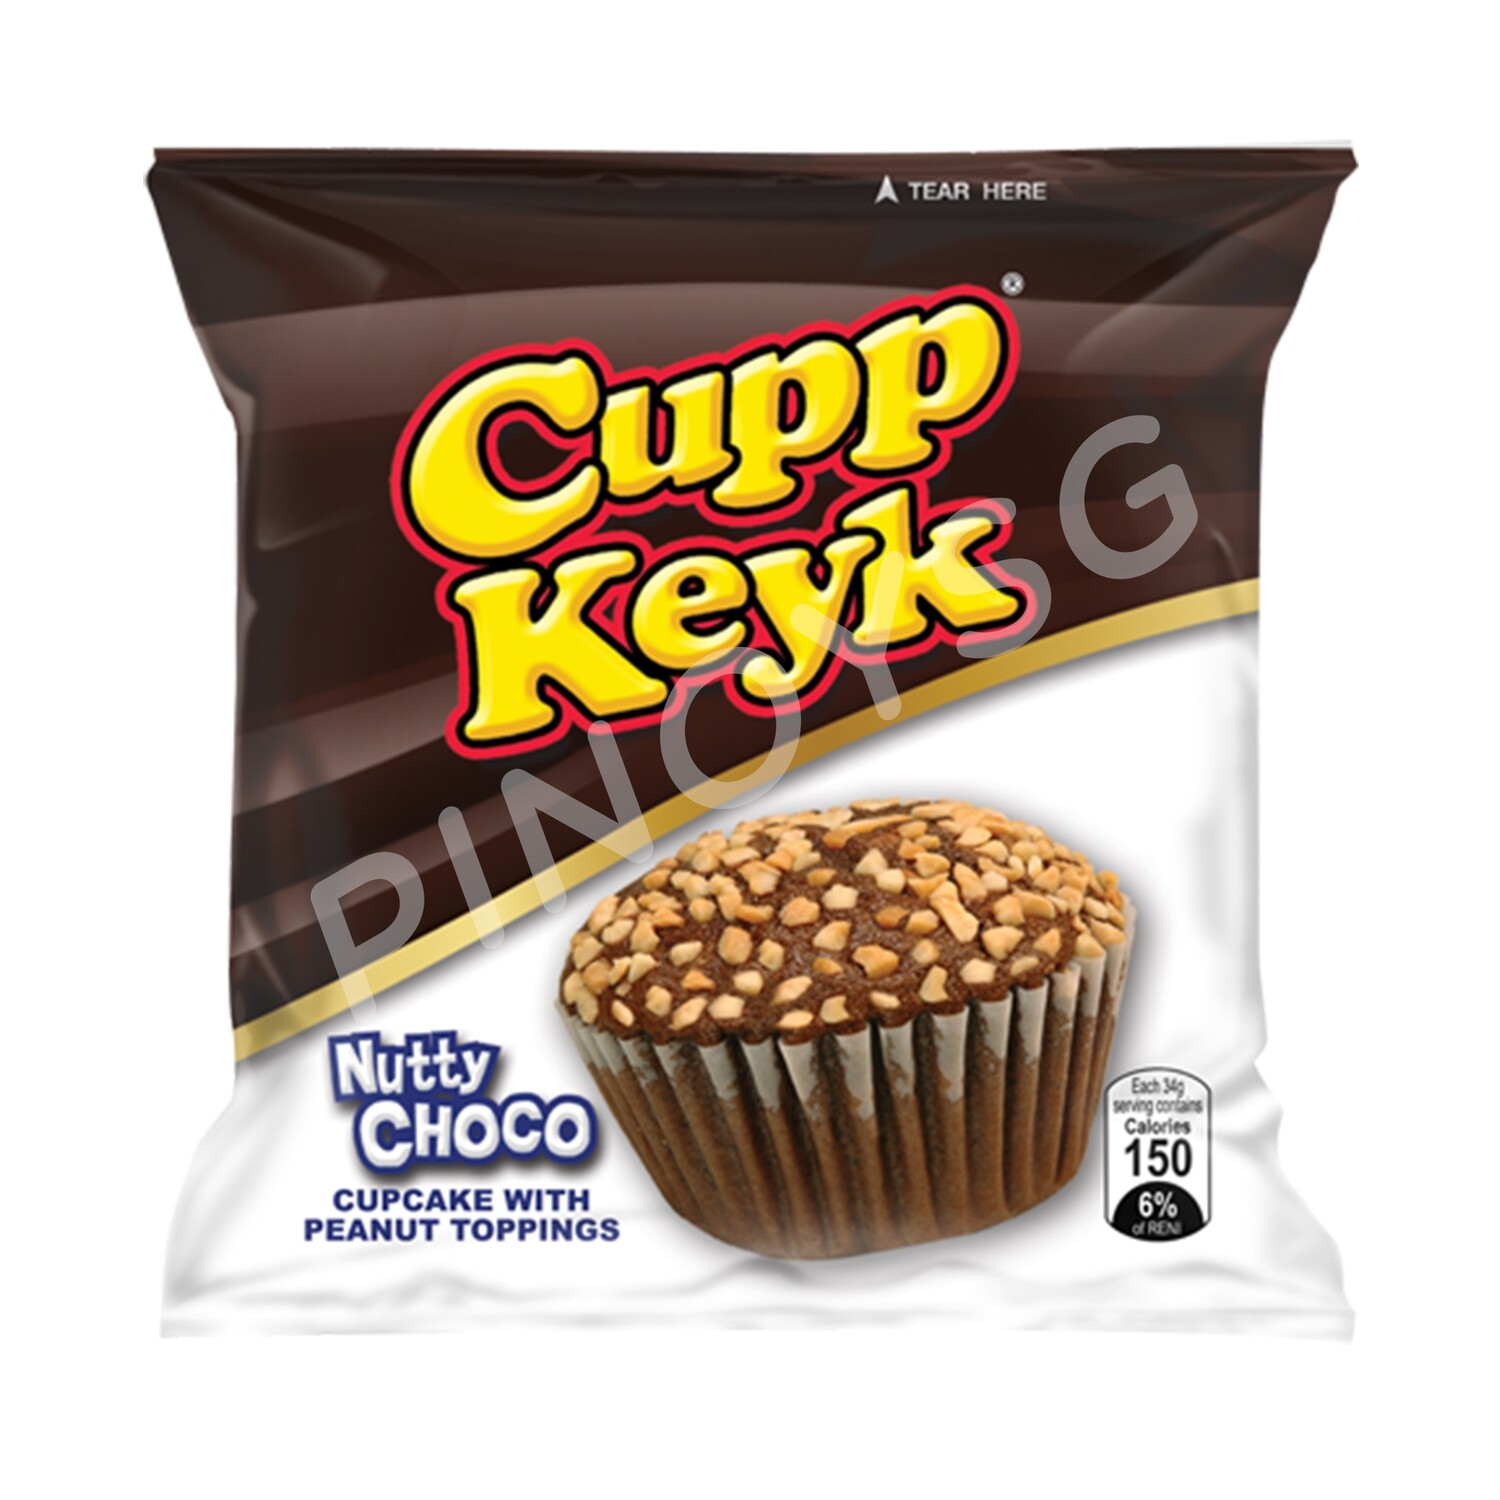 Rebisco Cupp Keyk Nutty Choco 10 x 36g